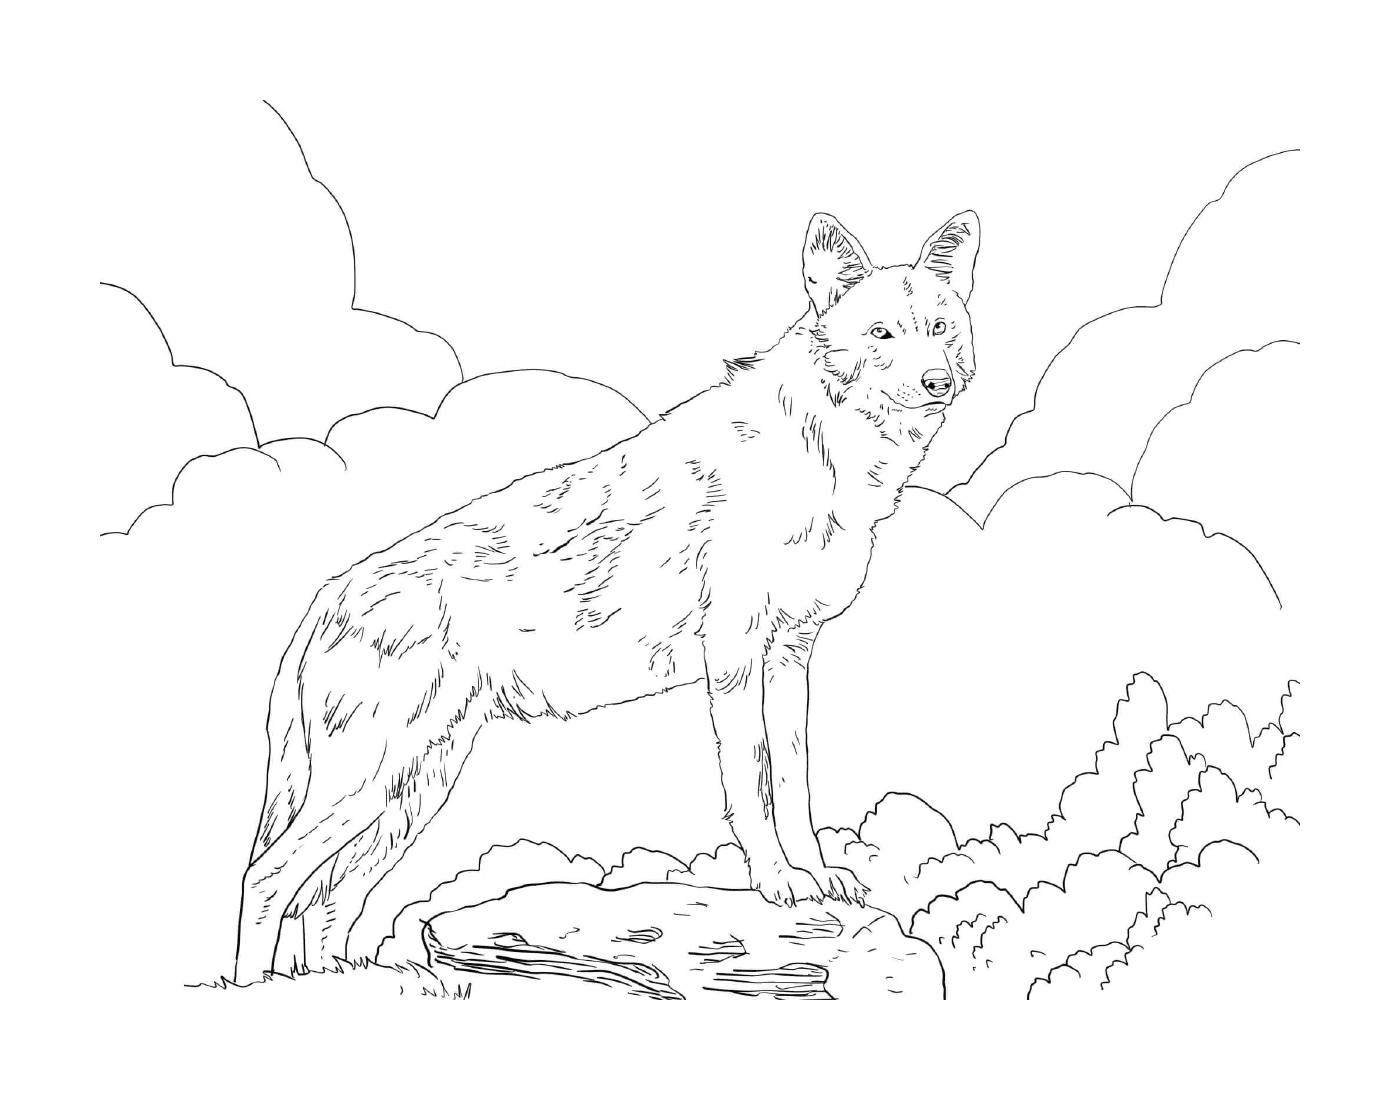  एक खेत में चट्टान पर खड़ा जानवर 